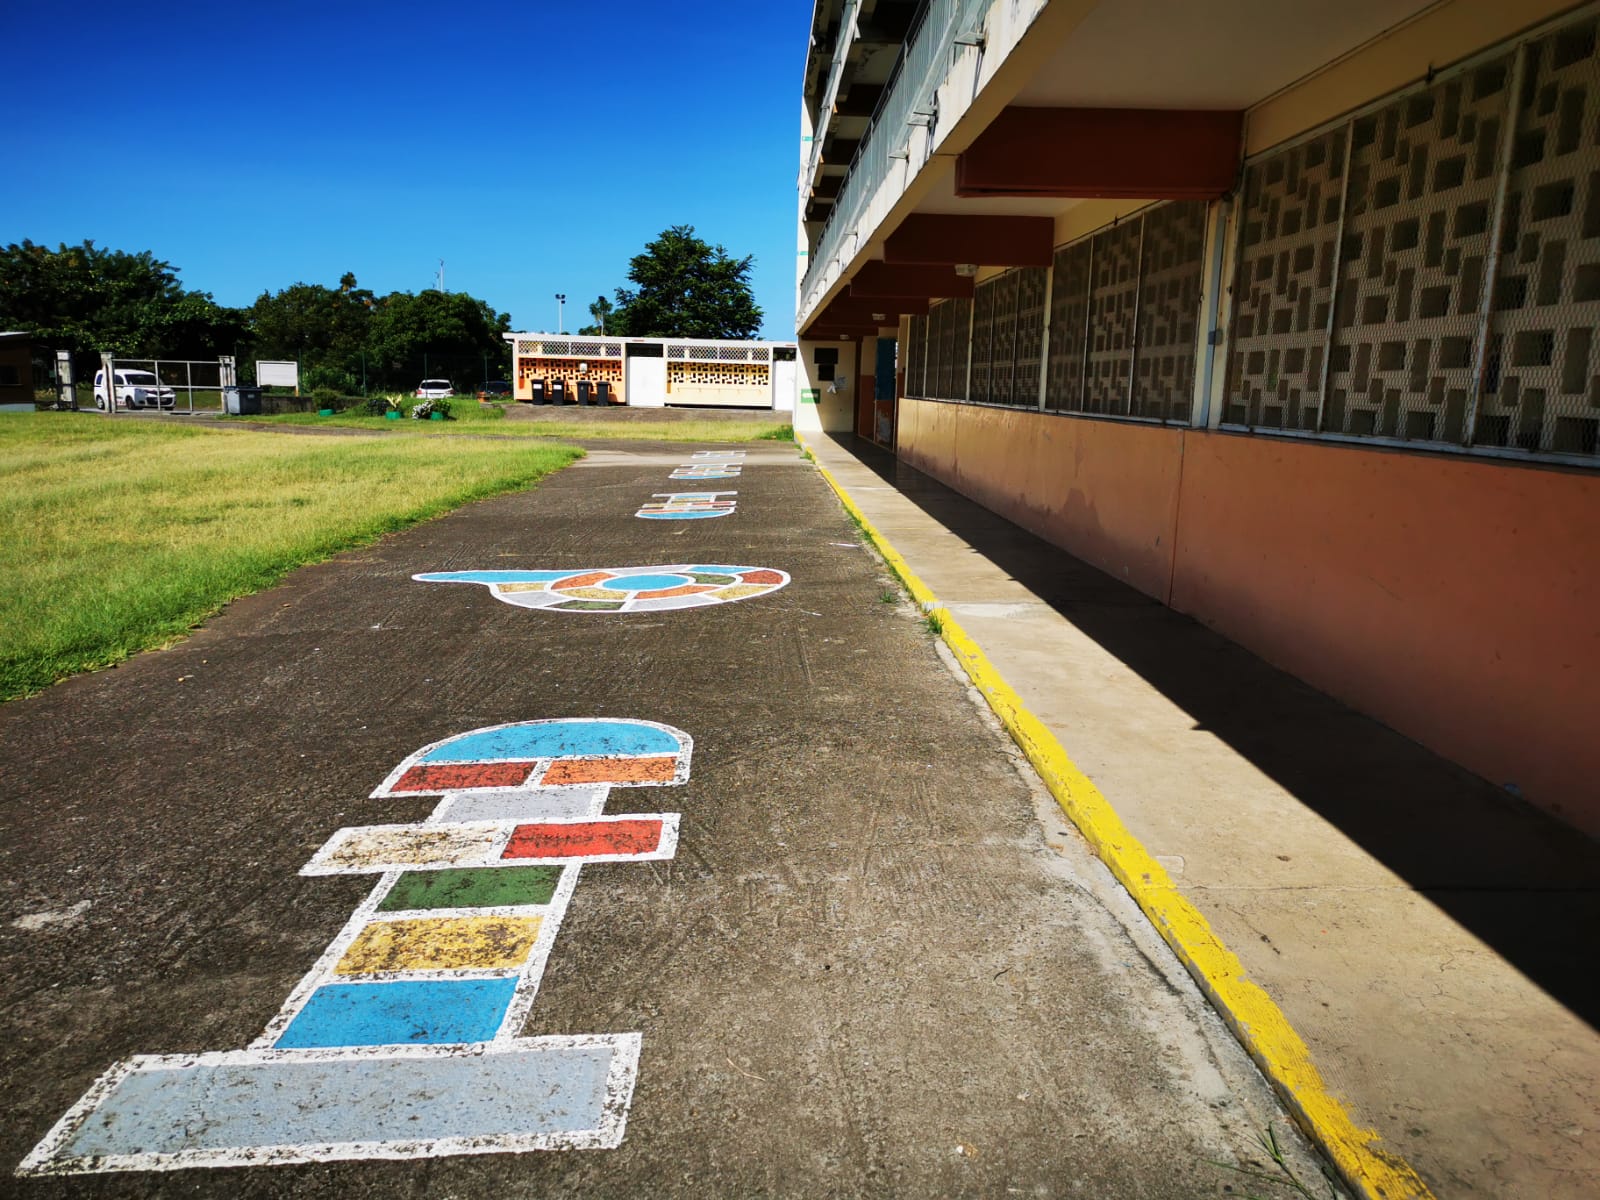     Blocages : près de 70% des établissements scolaires de Martinique fermés aujourd'hui

